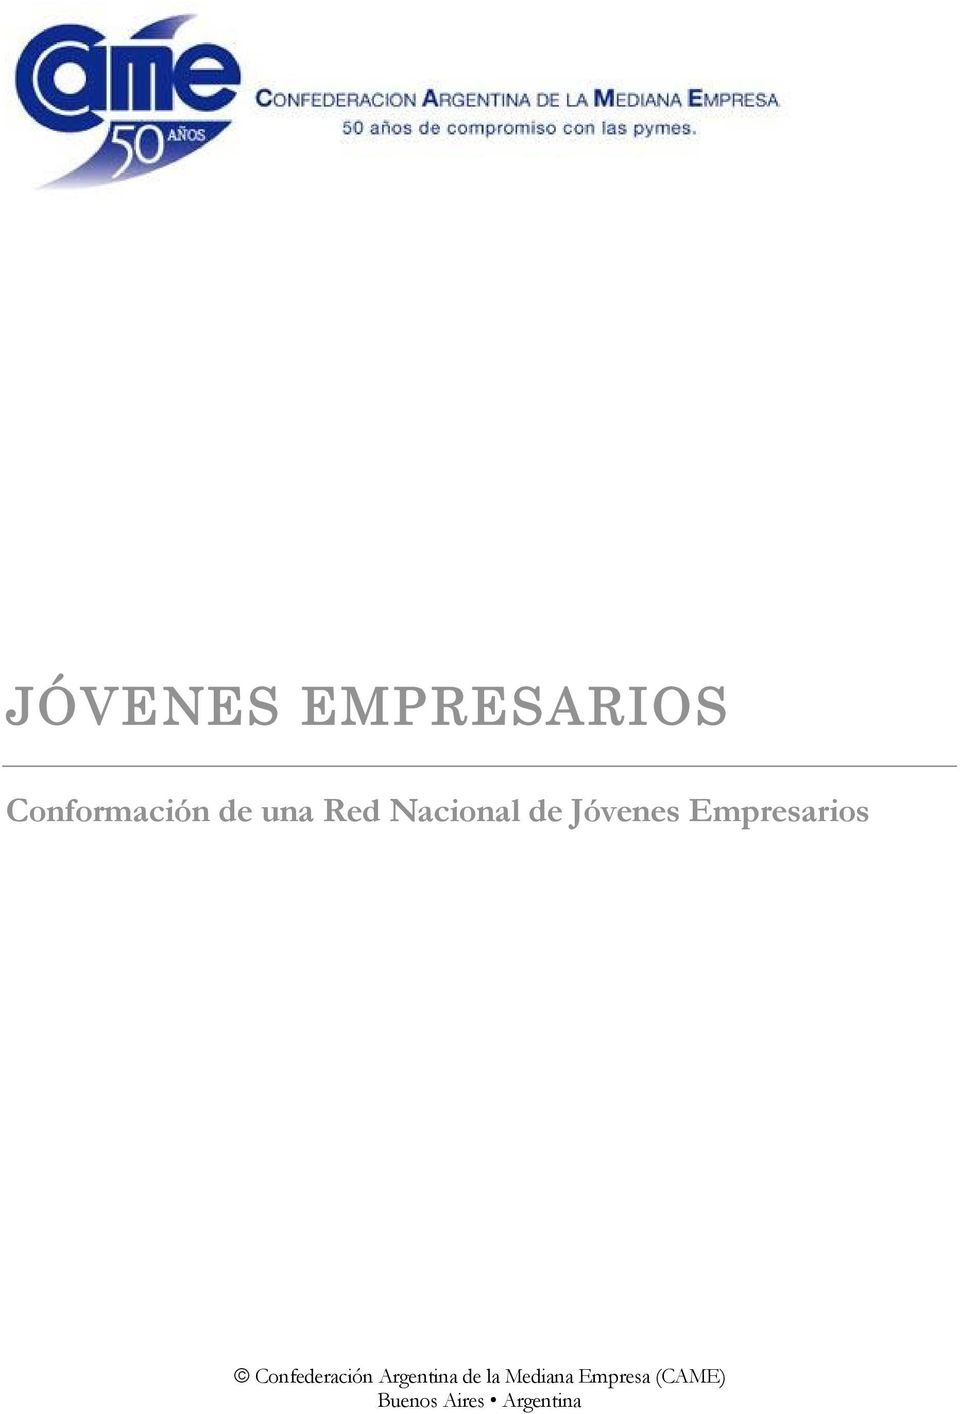 Empresarios Confederación Argentina